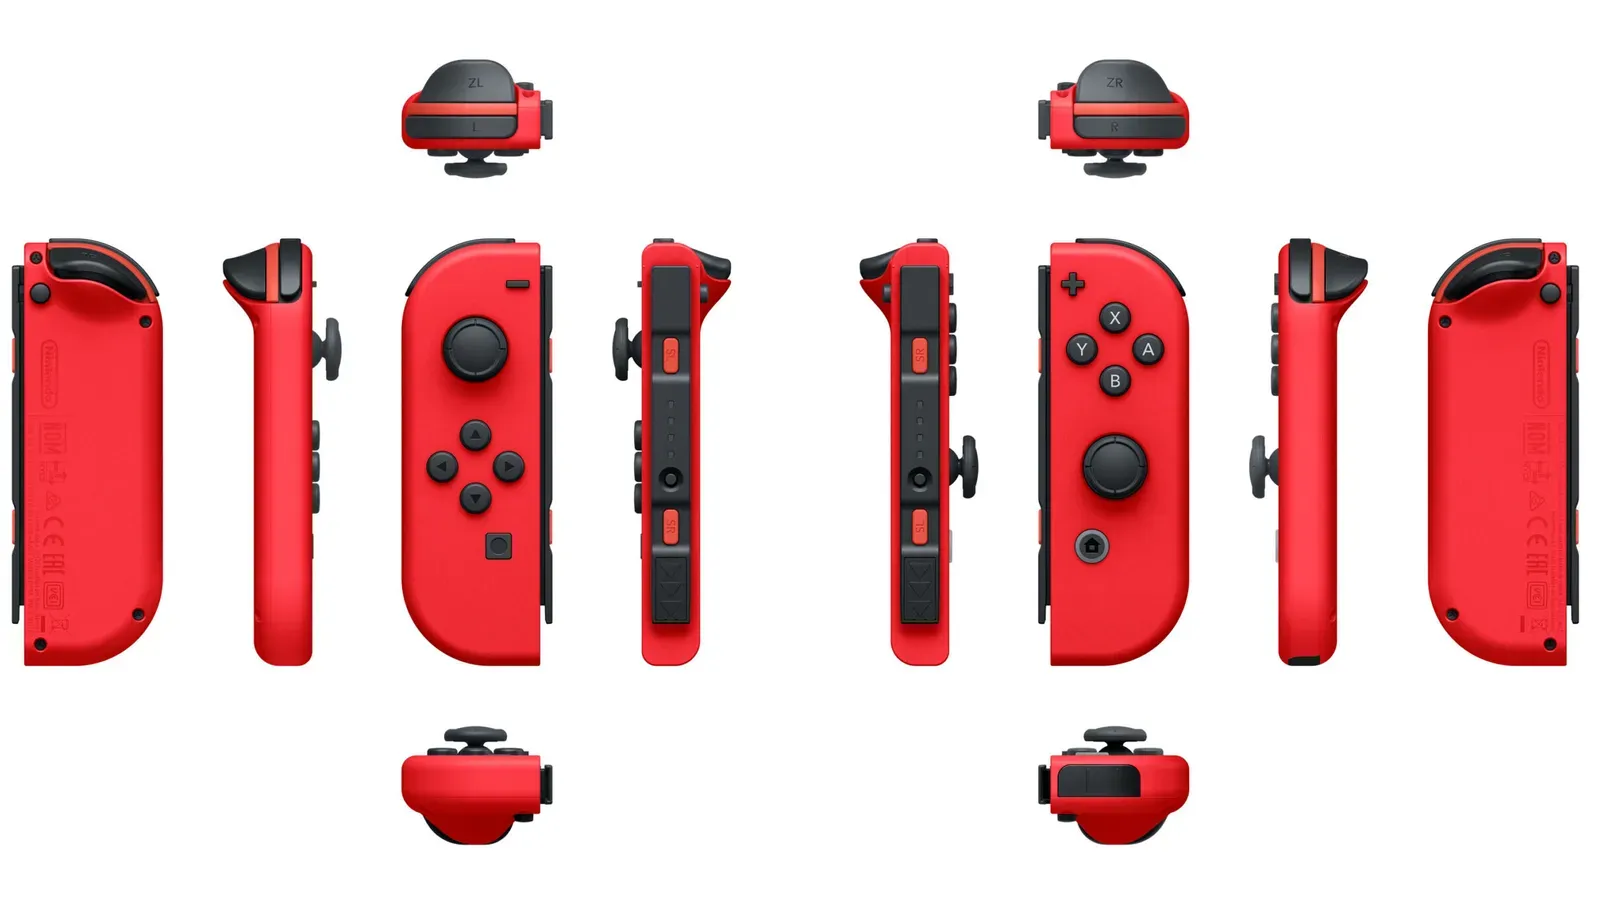 Cambio en el diseño de los controles de la Nintendo Switch 2